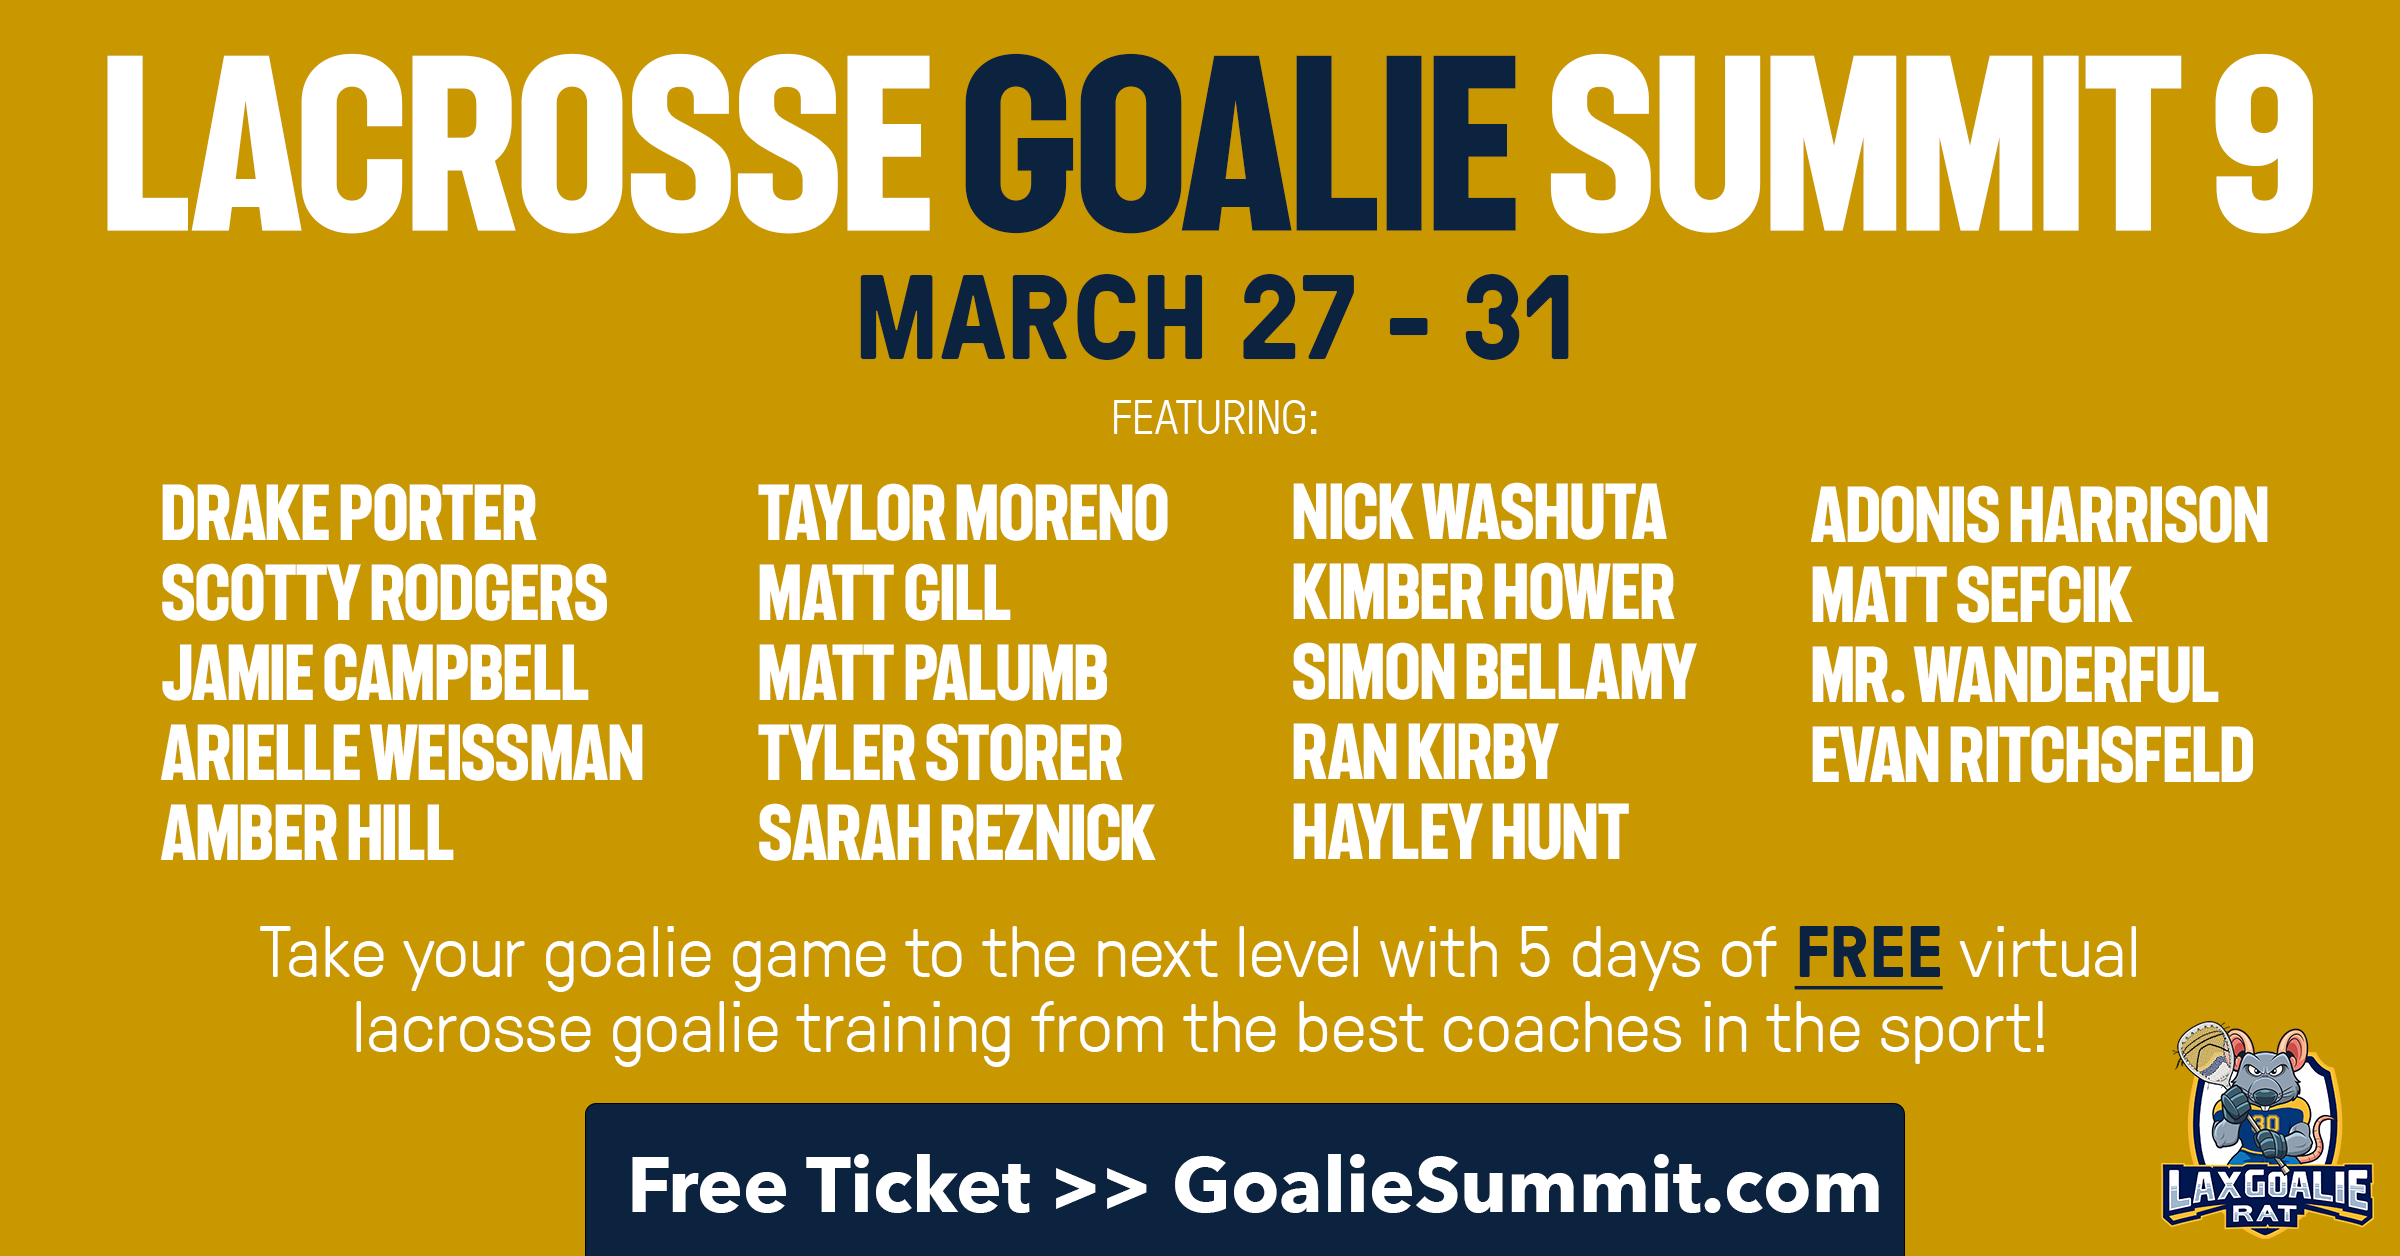 Lacrosse Goalie Summit 9